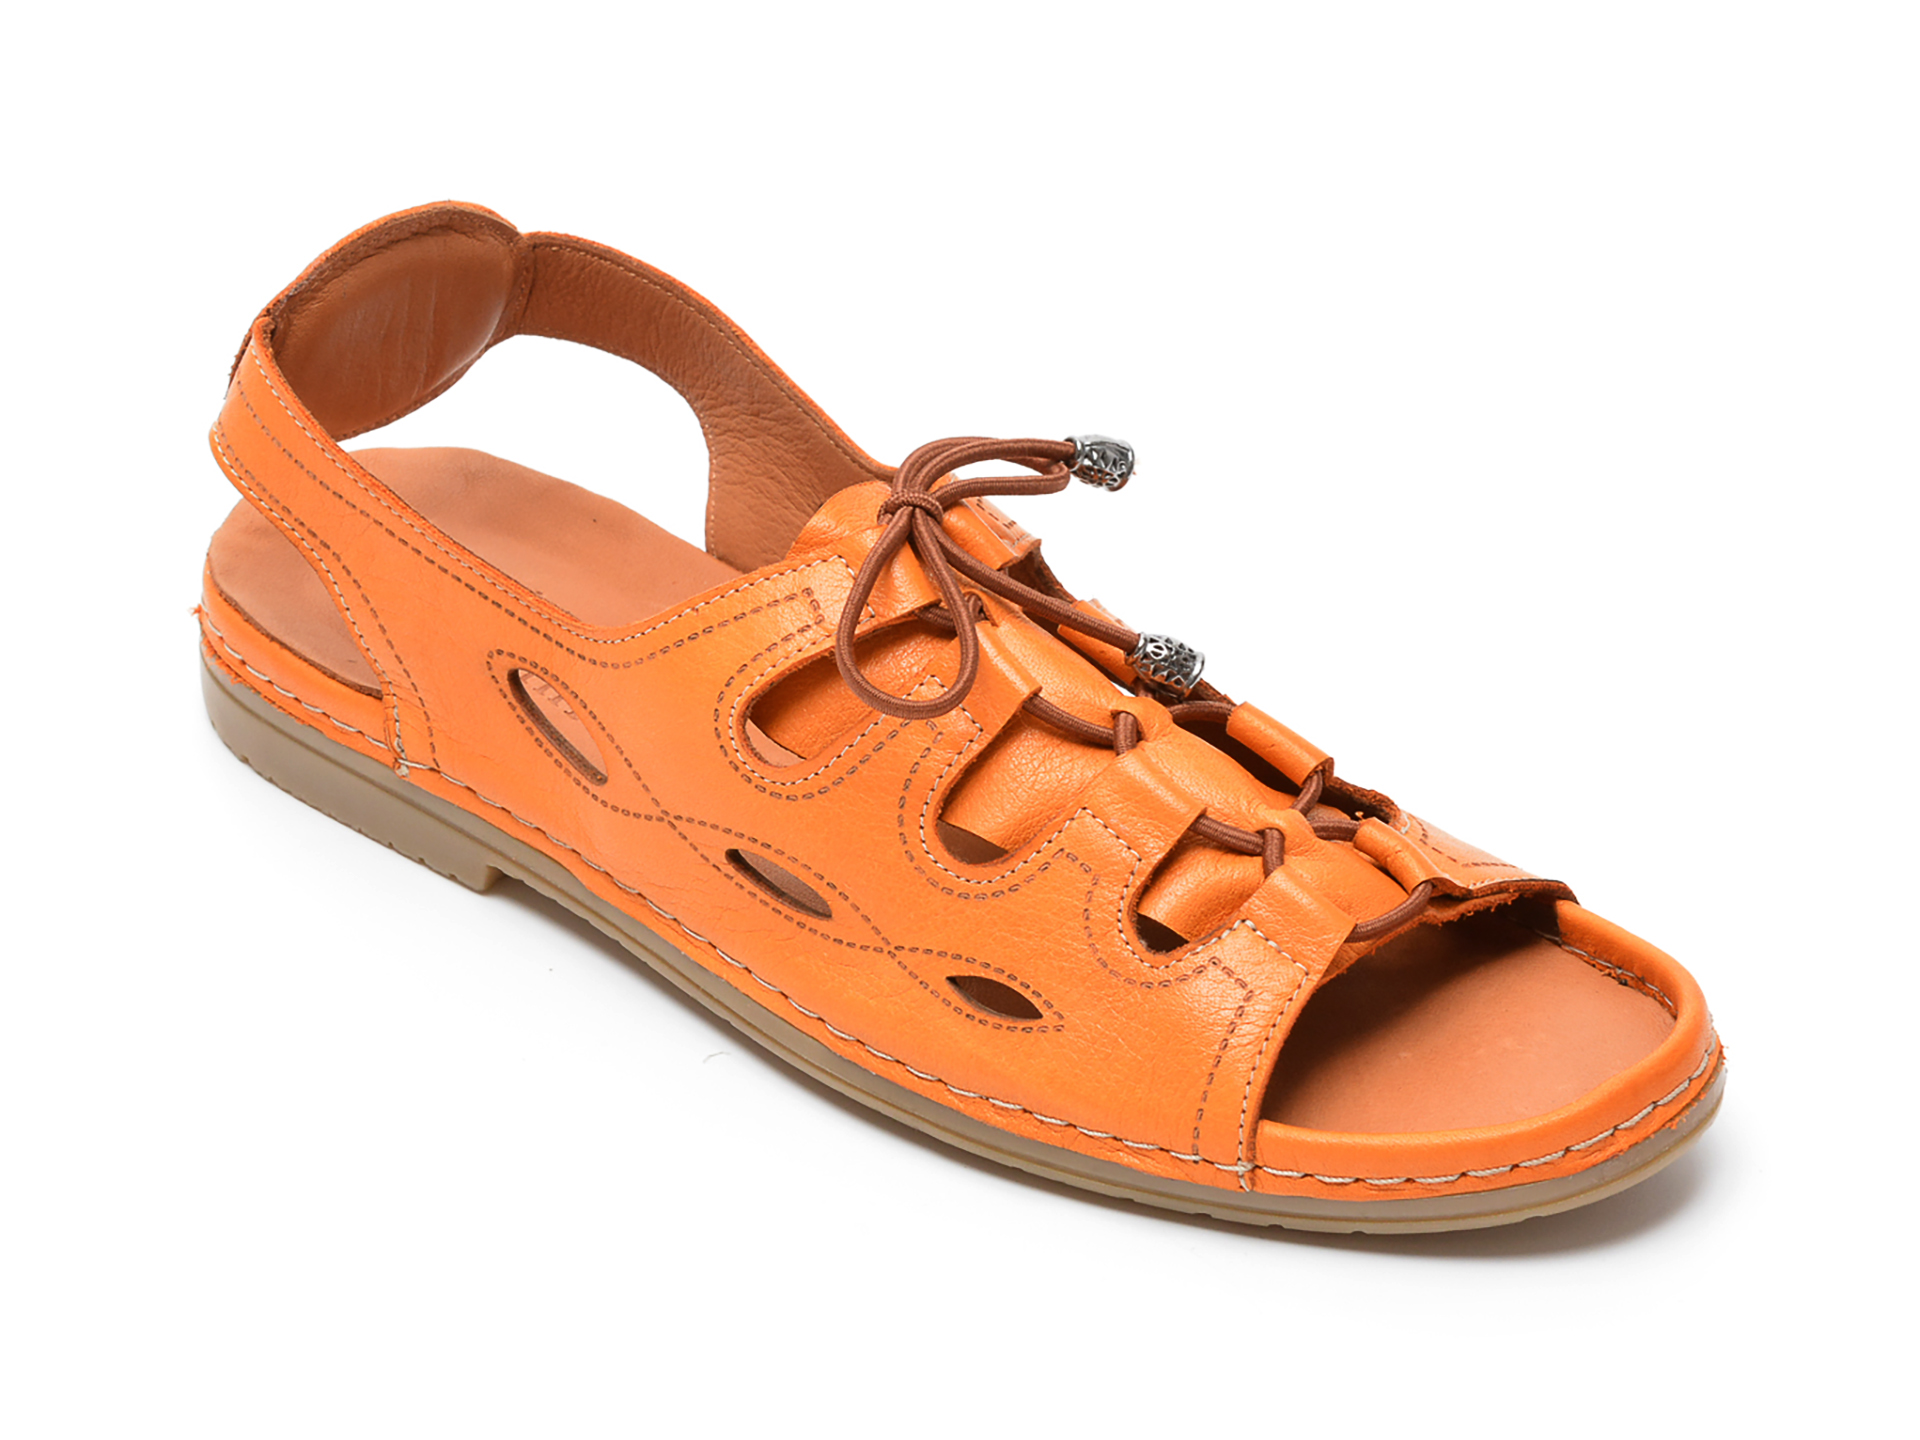 Sandale FLAVIA PASSINI portocalii, 24459, din piele naturala Flavia Passini imagine 2022 13clothing.ro